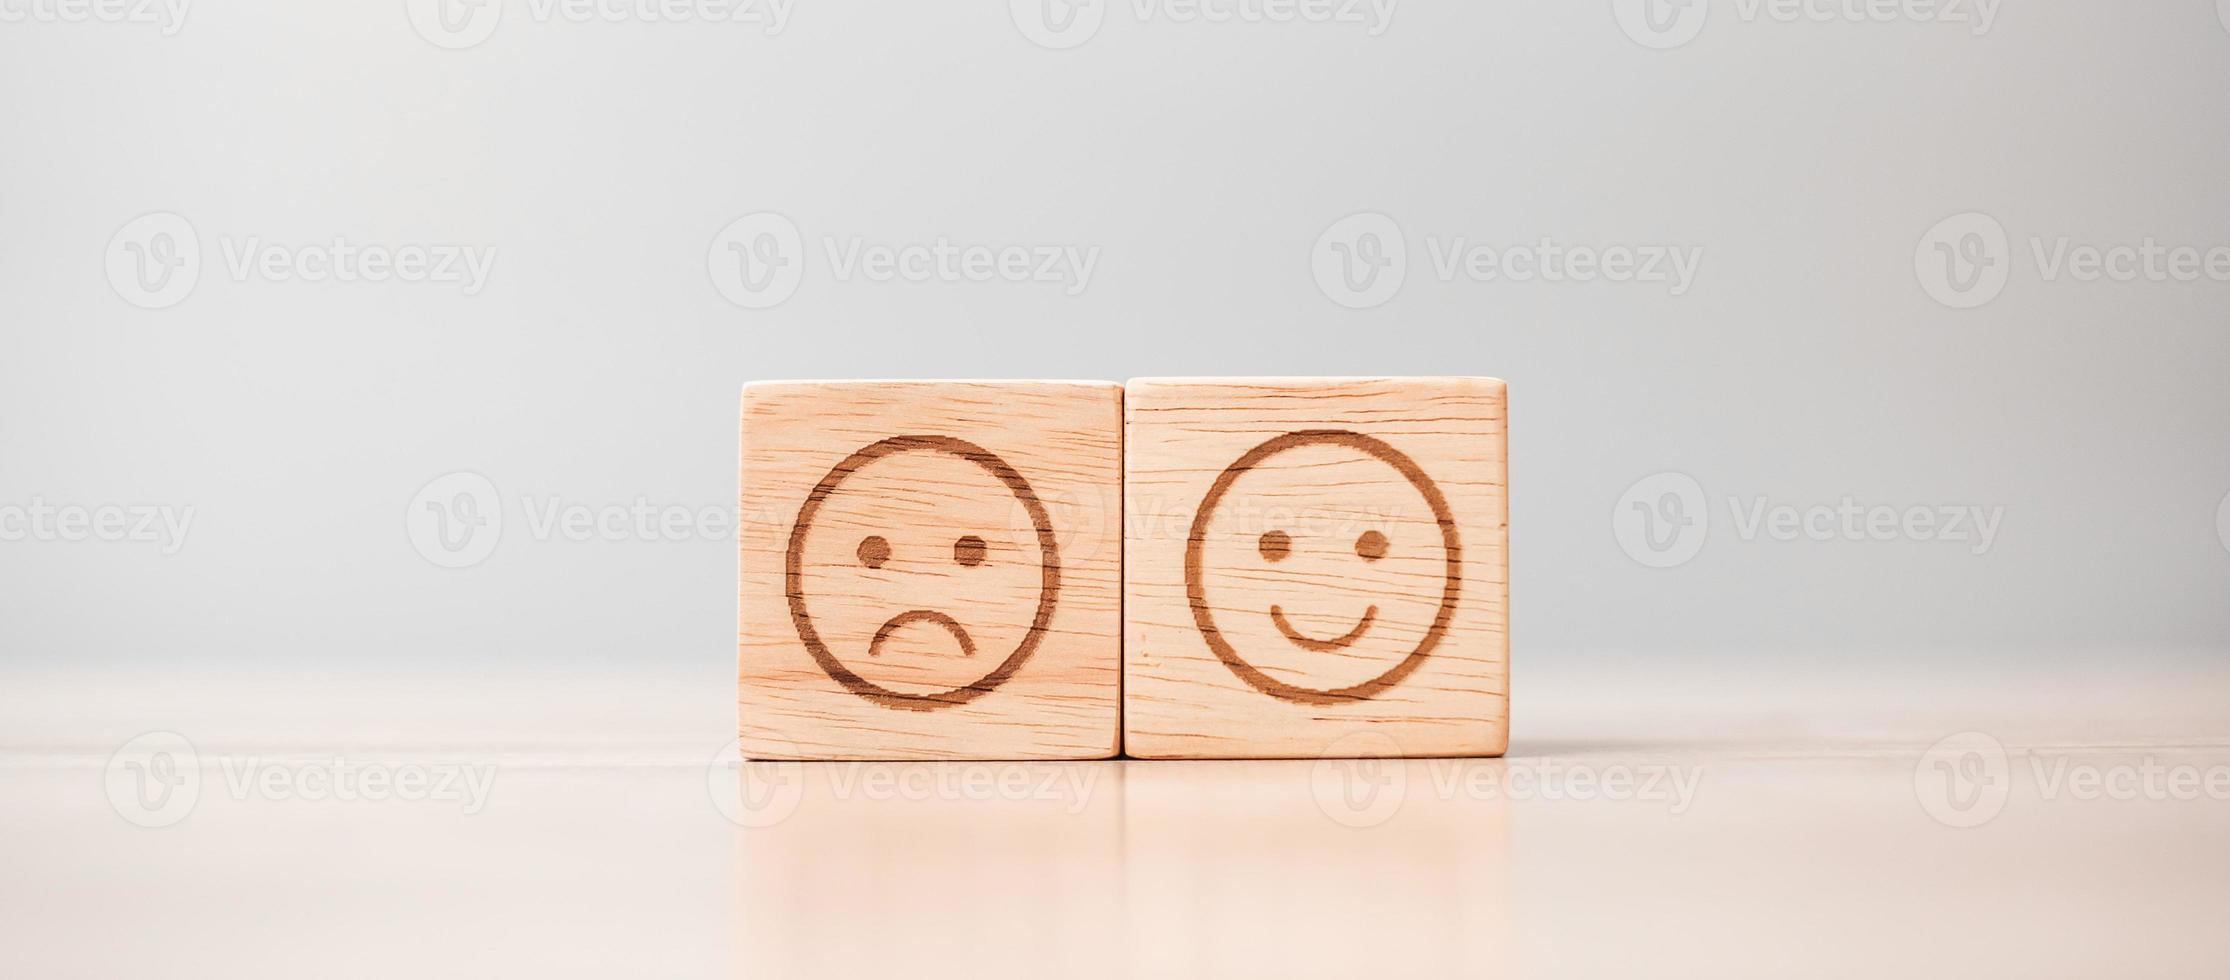 Emotionsgesichtssymbol auf Holzblöcken. Servicebewertung, Ranking, Kundenbewertung, Zufriedenheit, Bewertung und Feedback-Konzept foto